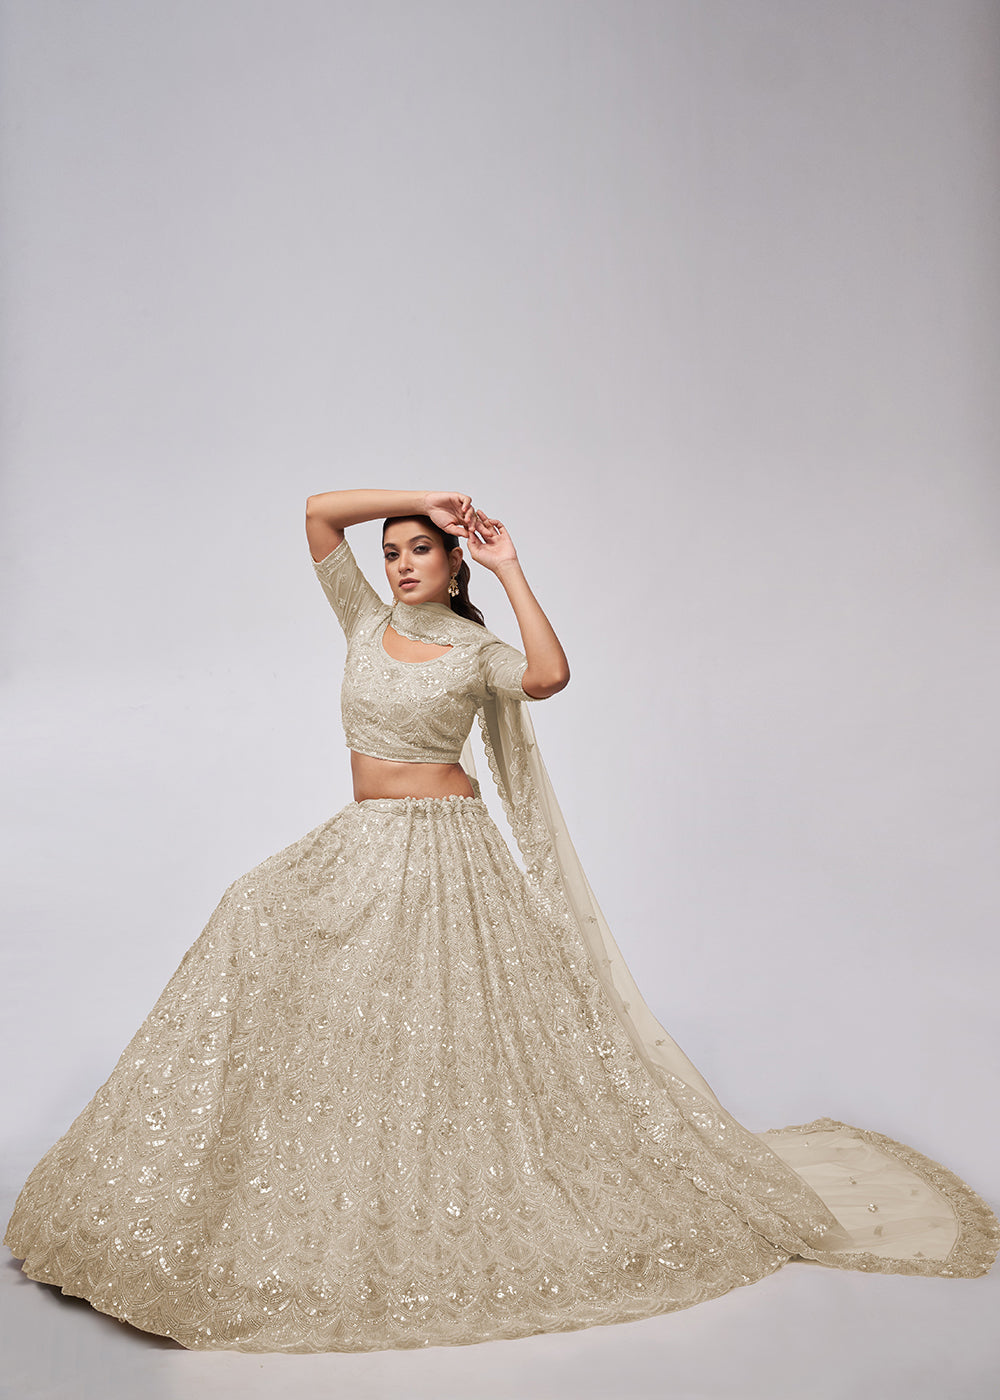 Buy Now Dazzling Ivory Bridal Embroidered Designer Lehenga Choli Online in USA, UK, Canada & Worldwide at Empress Clothing.